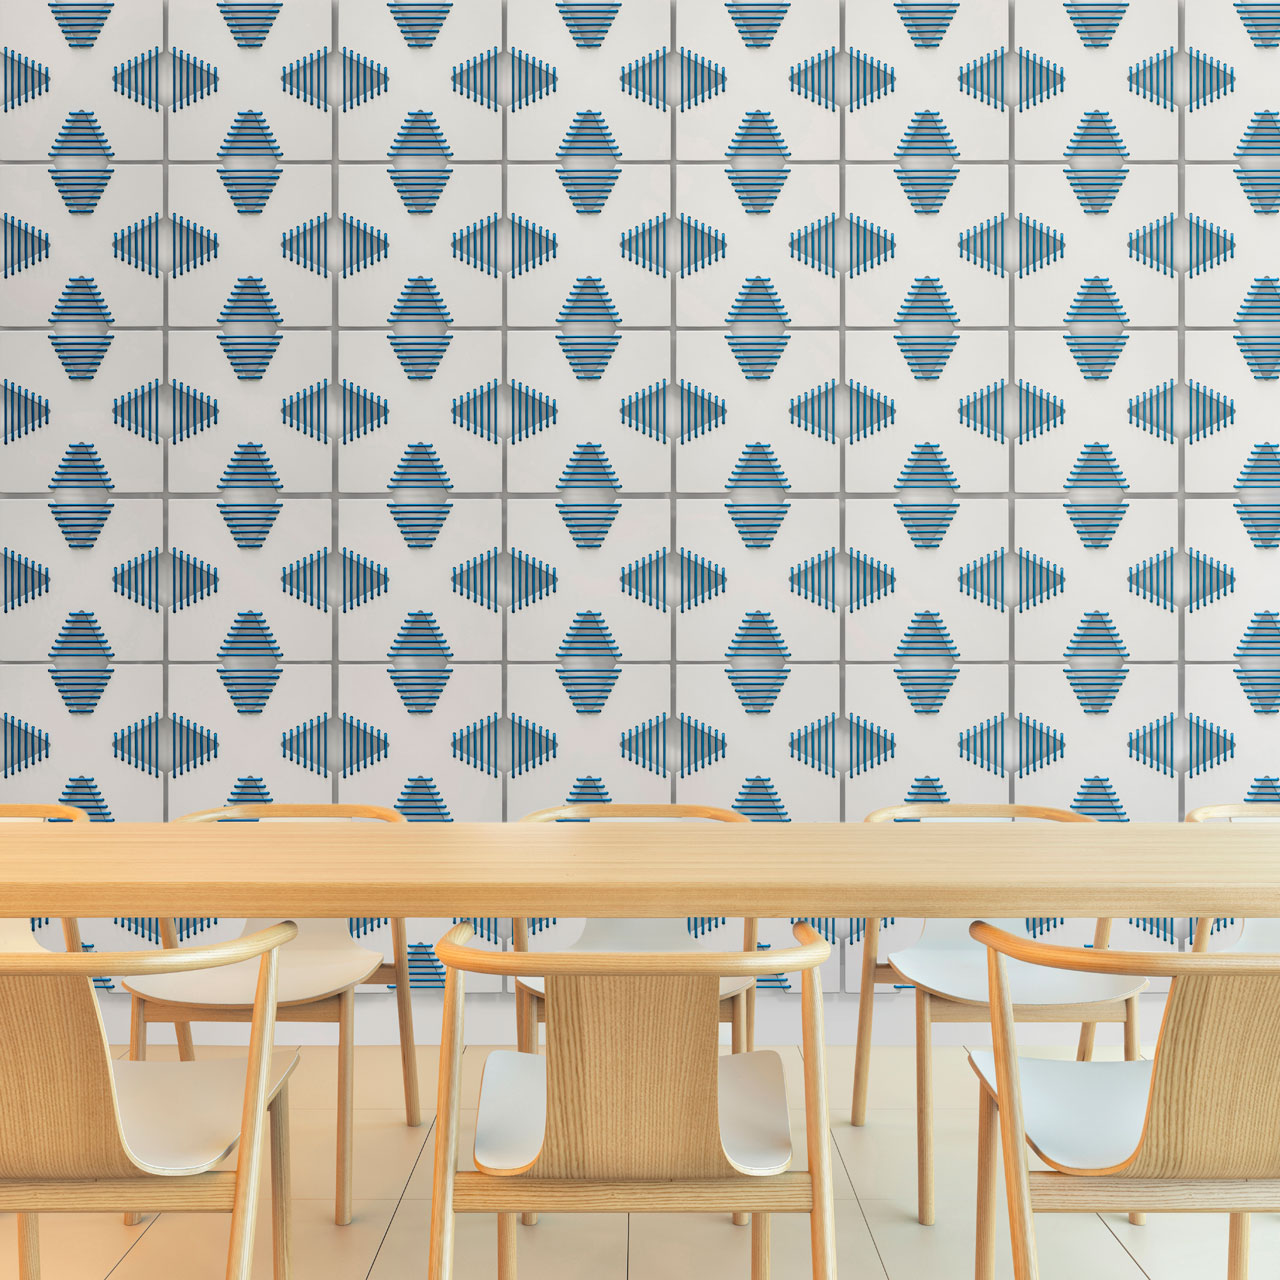 Corset Wall Tiles by Arbutus+Denman